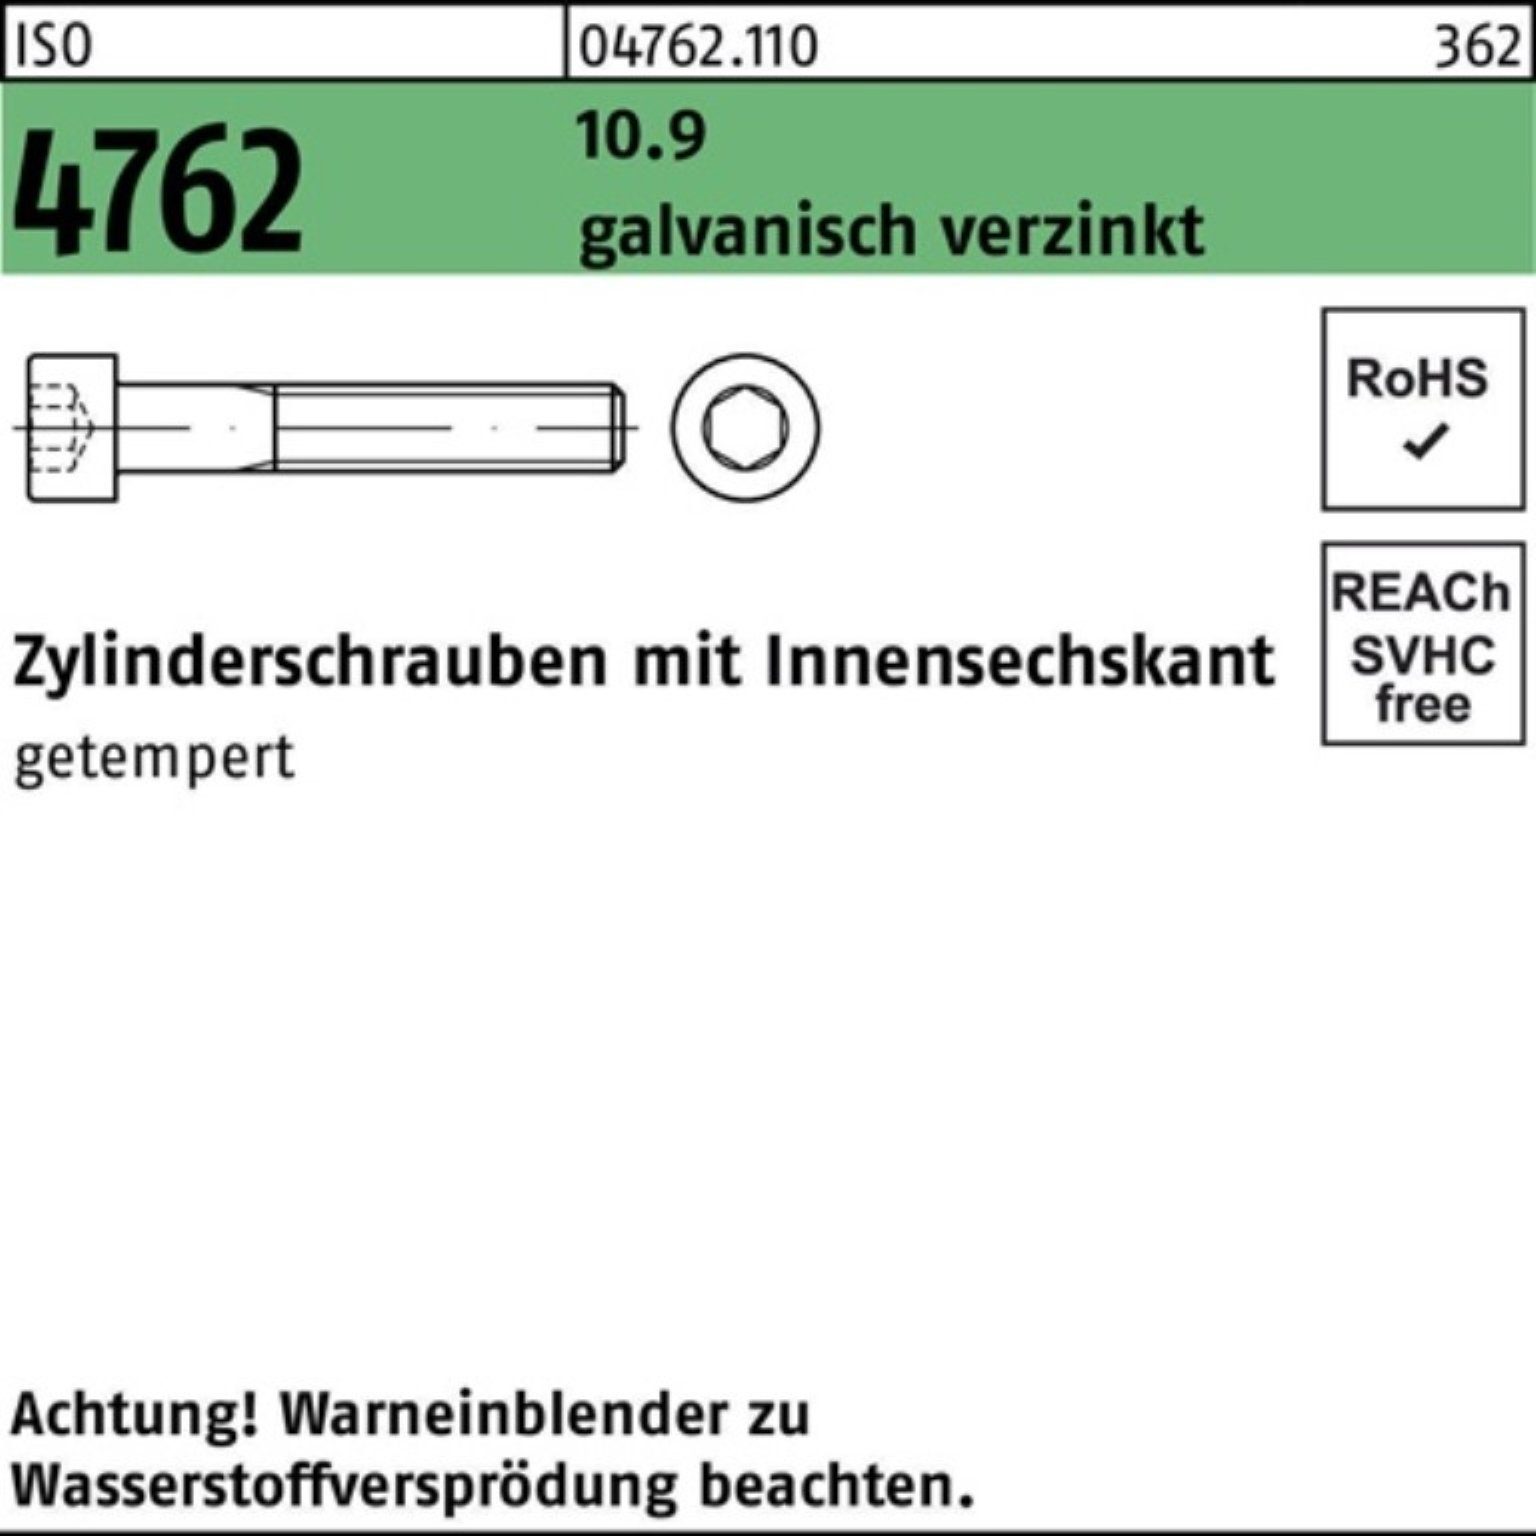 Reyher Zylinderschraube 100er Pack Zylinderschraube Innen-6kt M18x70 10.9 galv.verz. 4762 ISO